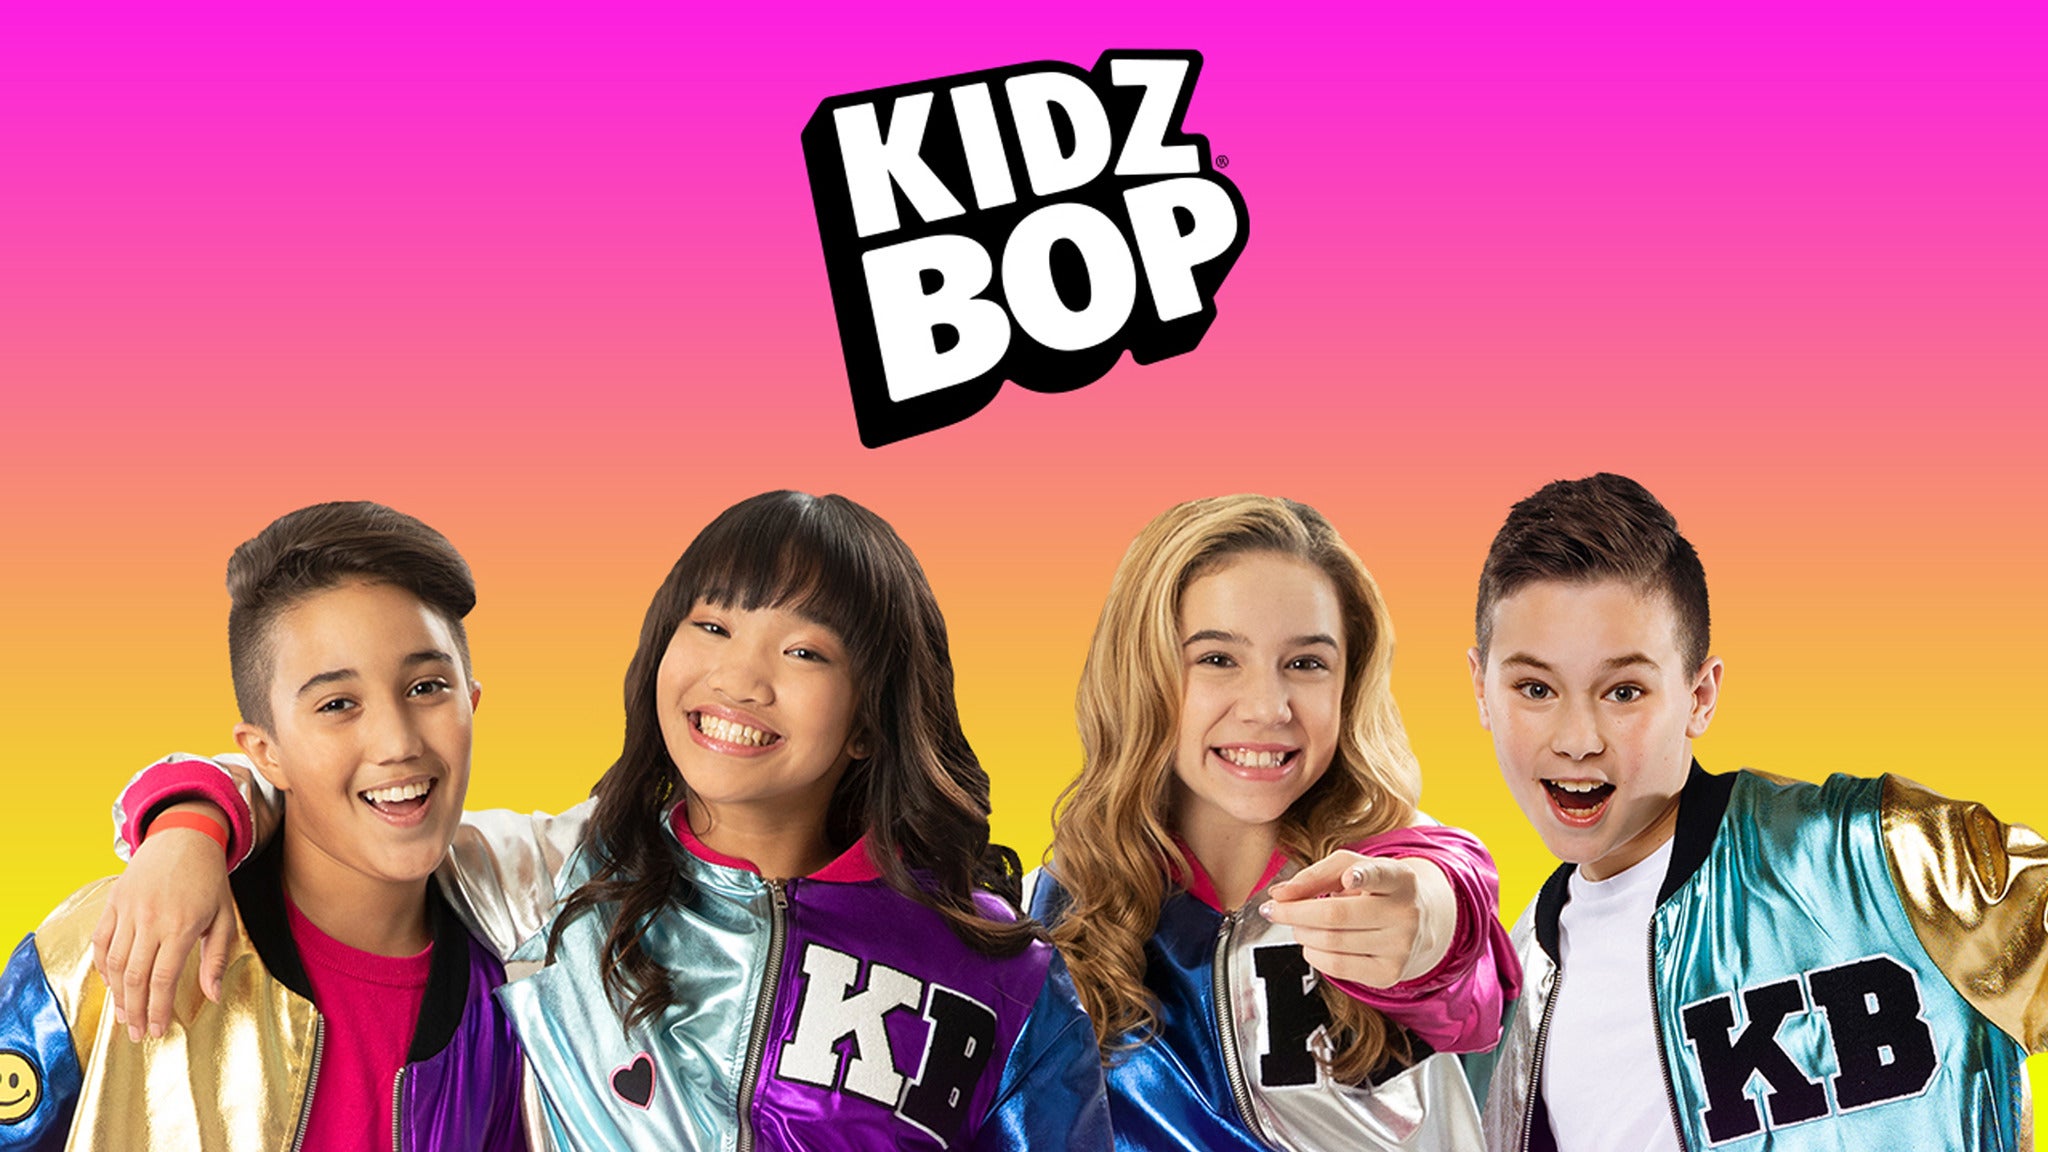 KIDZ BOP Kids in Atlantic City promo photo for Citi® Cardmember presale offer code